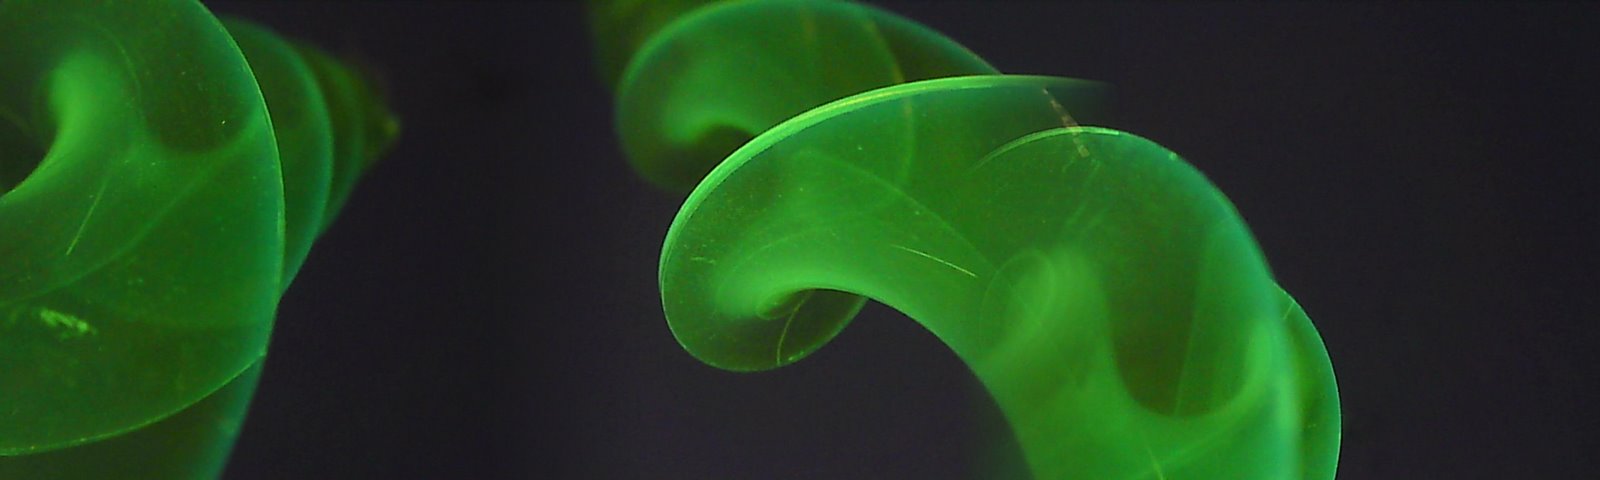 Green Spirals in the Void